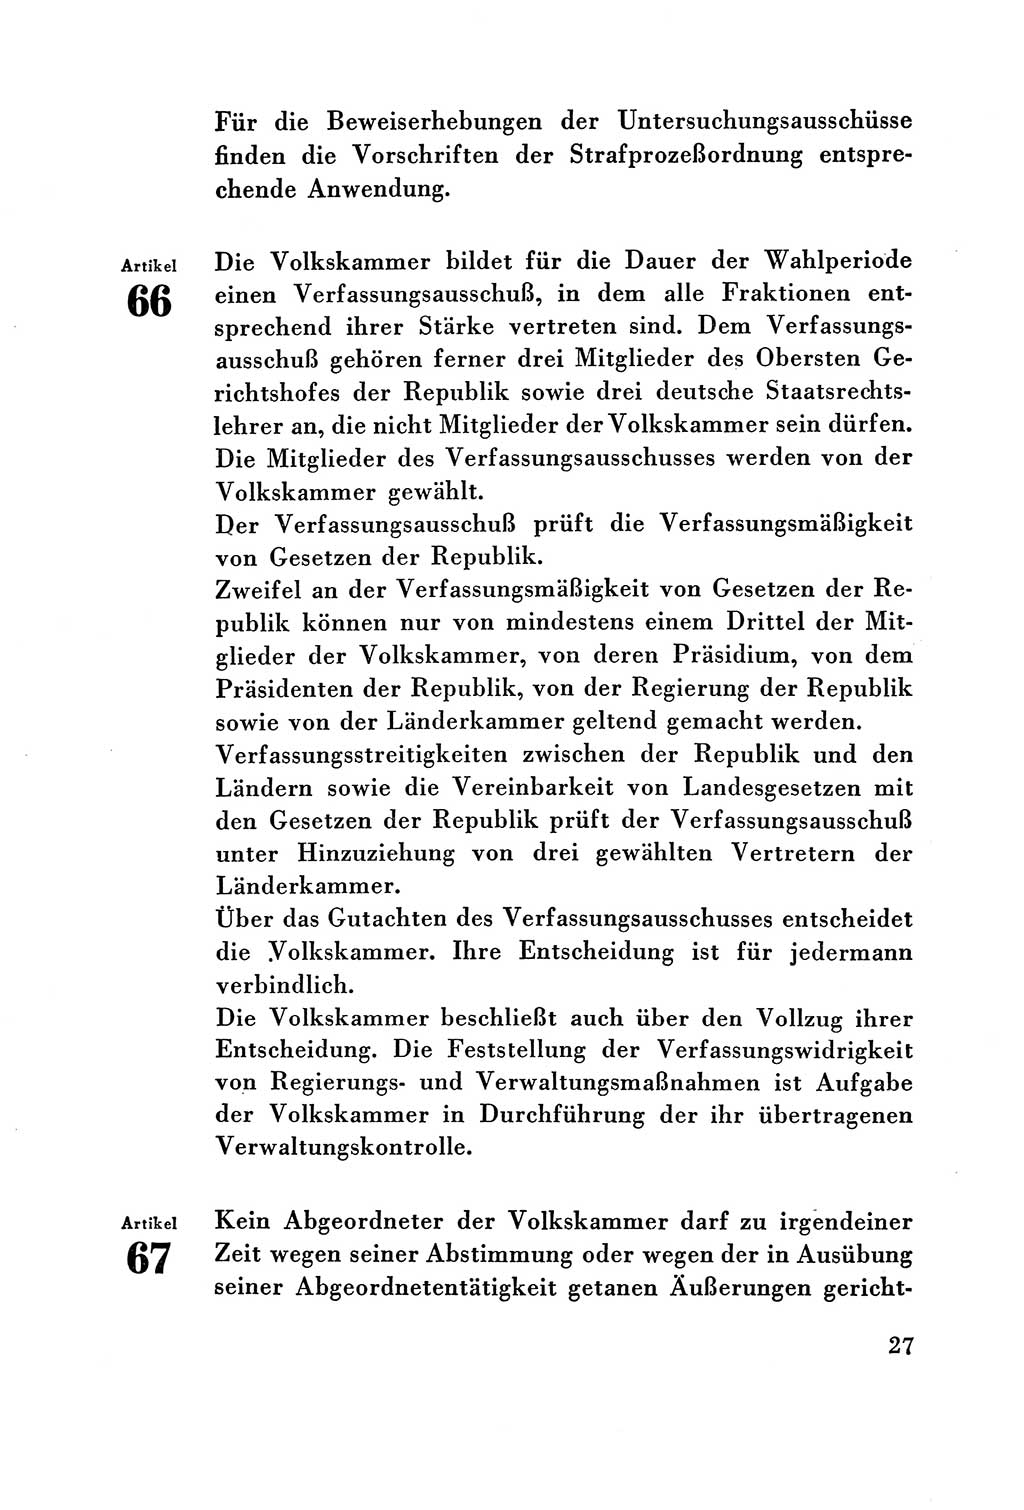 Verfassung der Deutschen Demokratischen Republik (DDR) vom 7. Oktober 1949, Seite 27 (Verf. DDR 1949, S. 27)